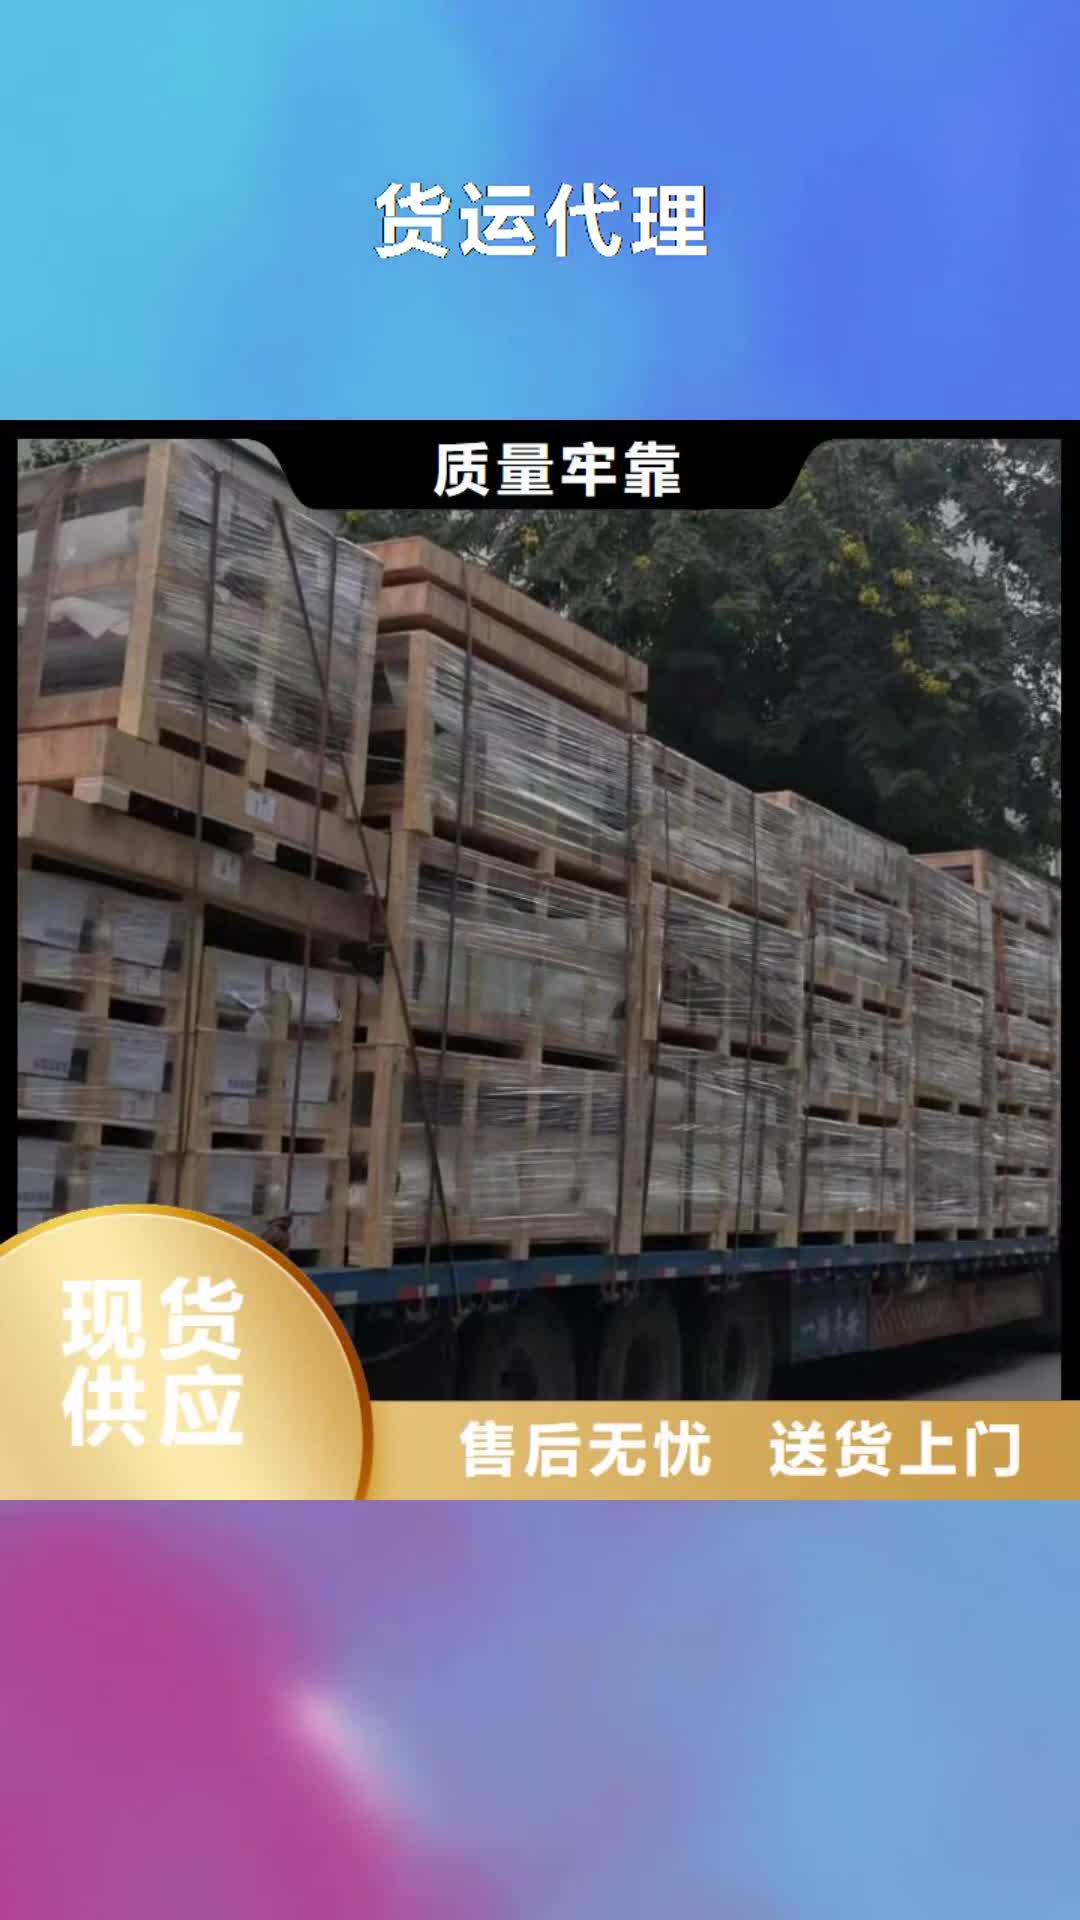 广元【货运代理】 广州到广元物流专线运输公司返程车托运大件搬家整车配货